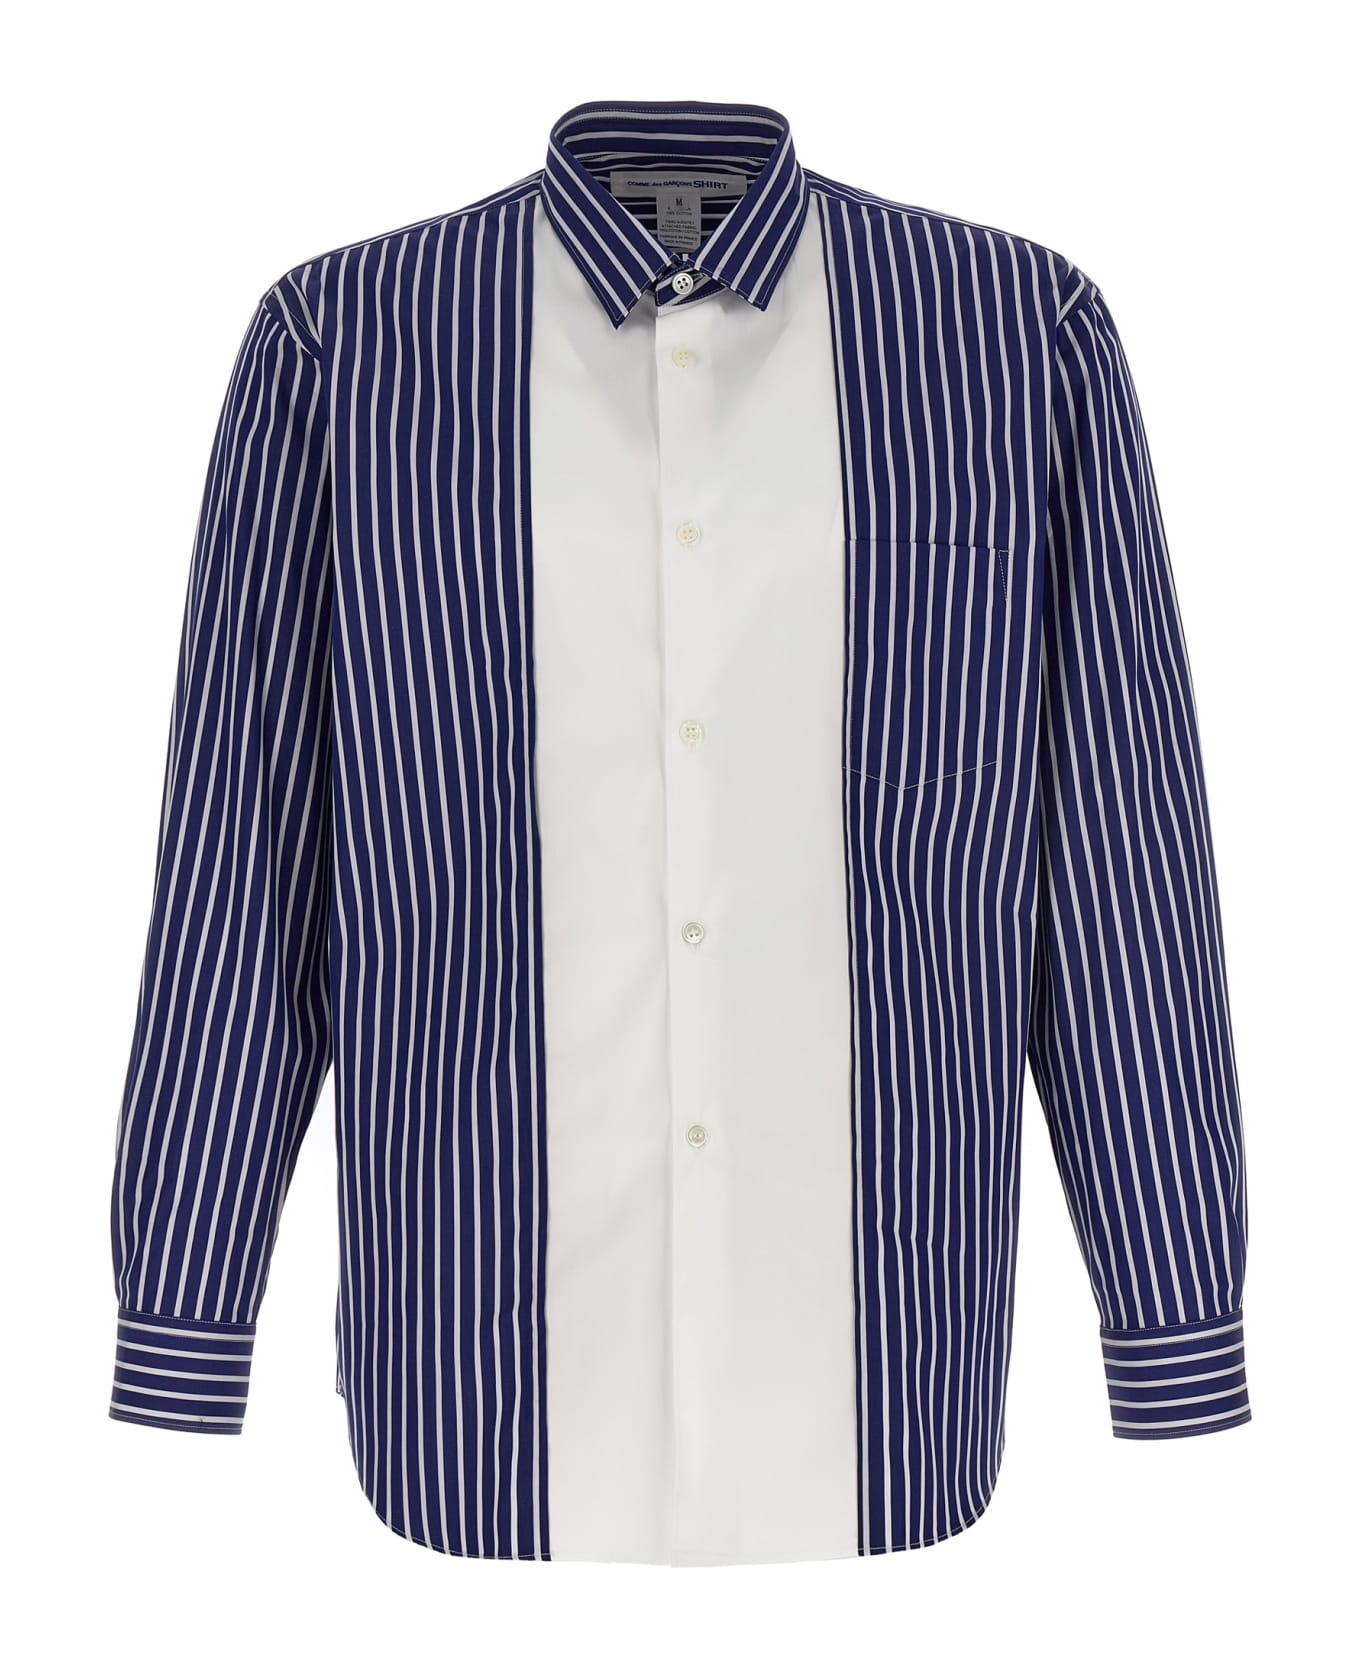 Comme des Garçons Shirt Striped Shirt - Multicolor シャツ